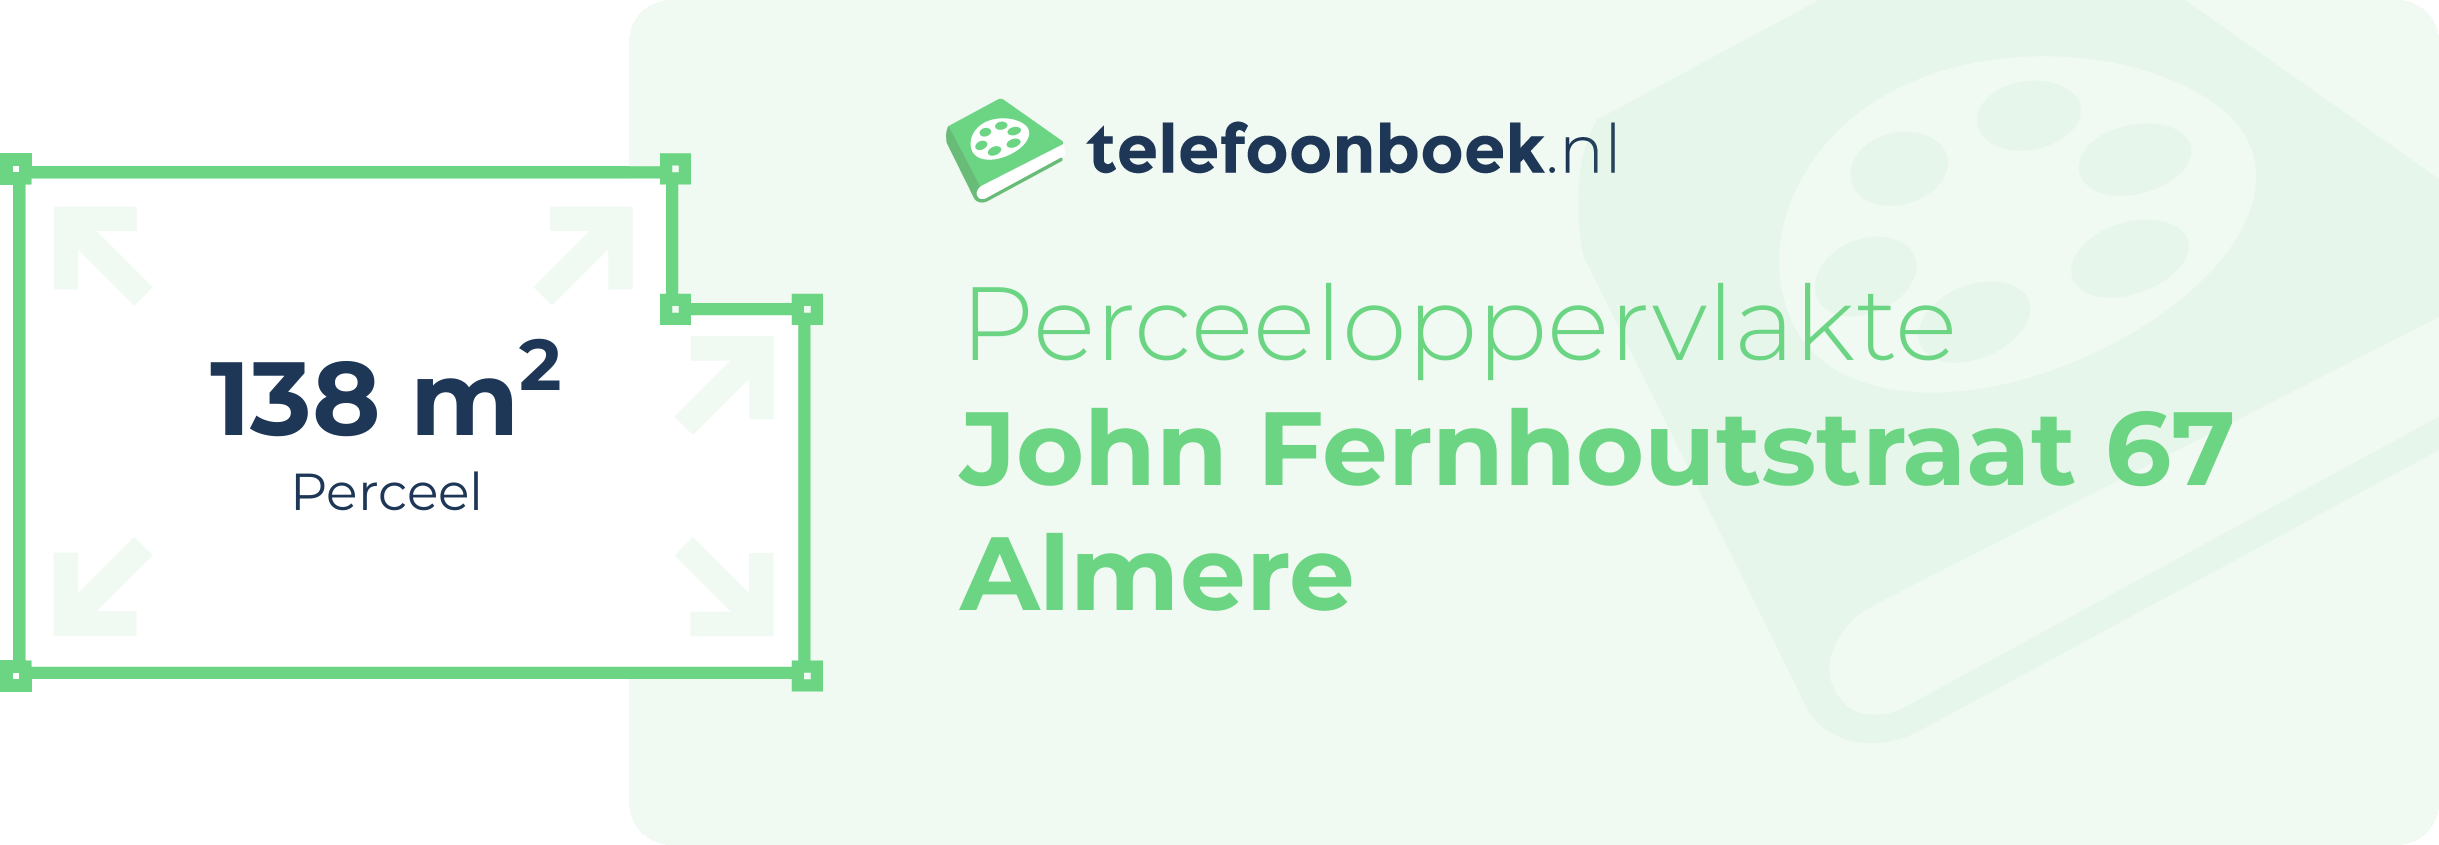 Perceeloppervlakte John Fernhoutstraat 67 Almere